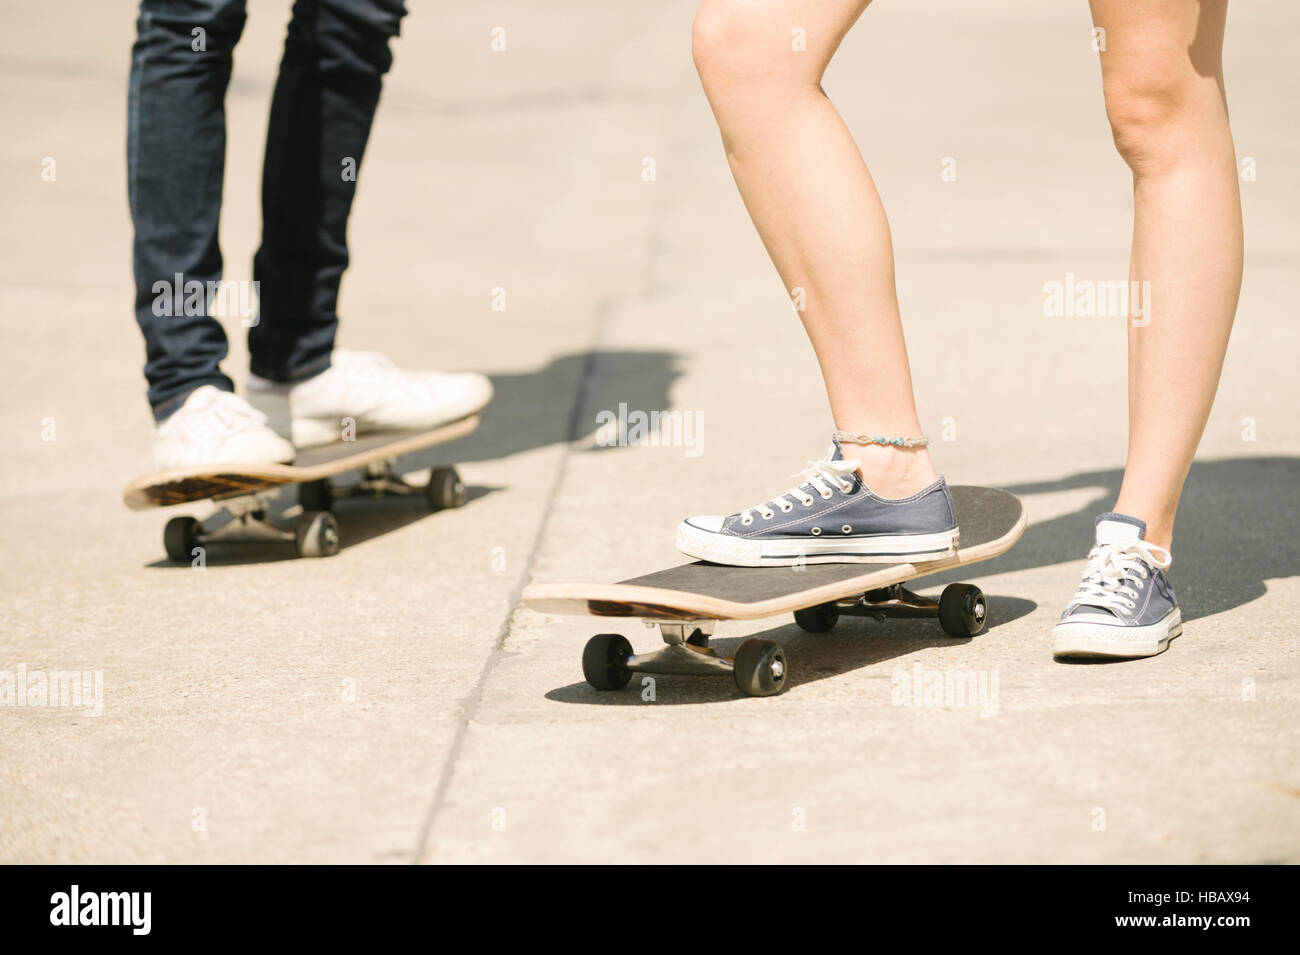 Jambes de femmes et d'hommes à roulettes standing in skatepark Banque D'Images